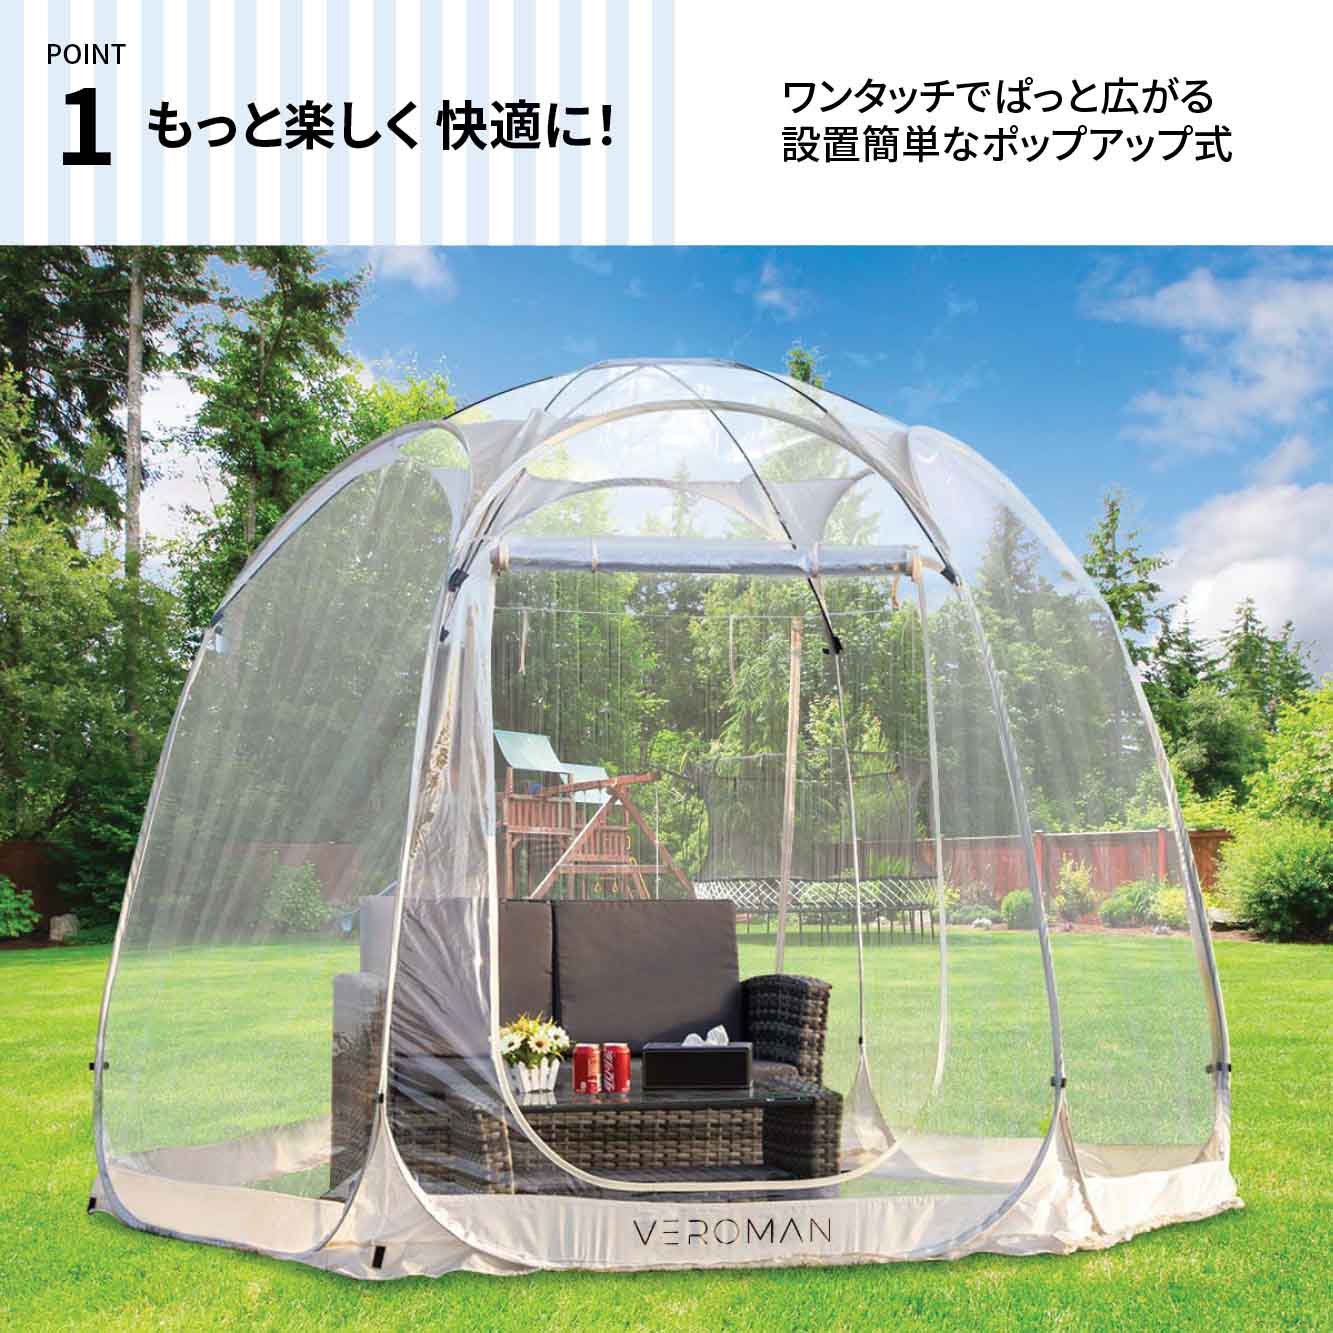 VeroMan 透明テント バブルテント 六角形 スクリーンハウス ルーム